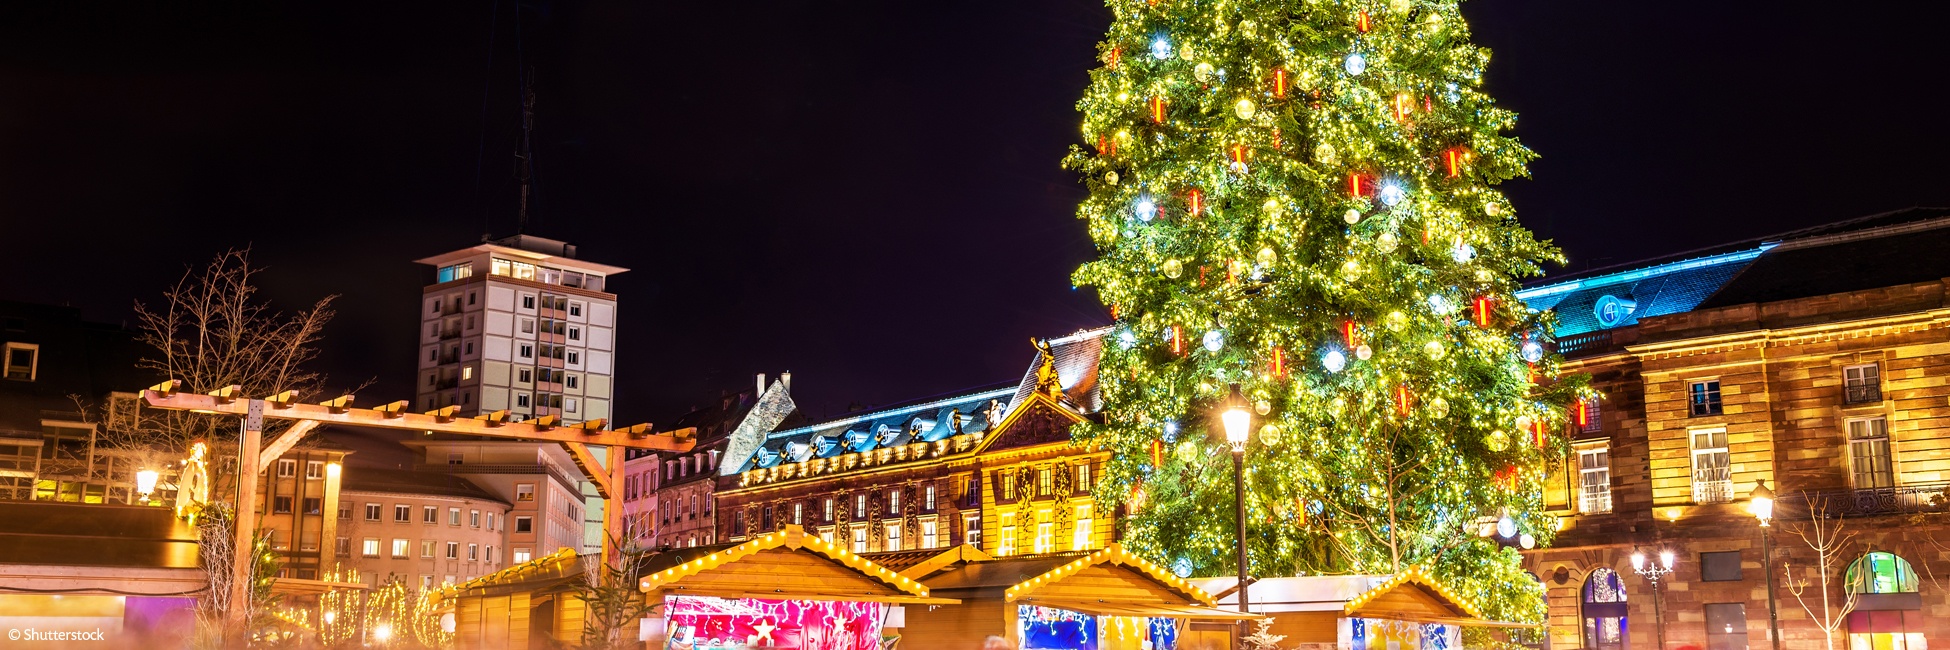 PMN_P1PP - Tradiciones navideñas alsacianas y navegación en el corazón de Estrasburgo